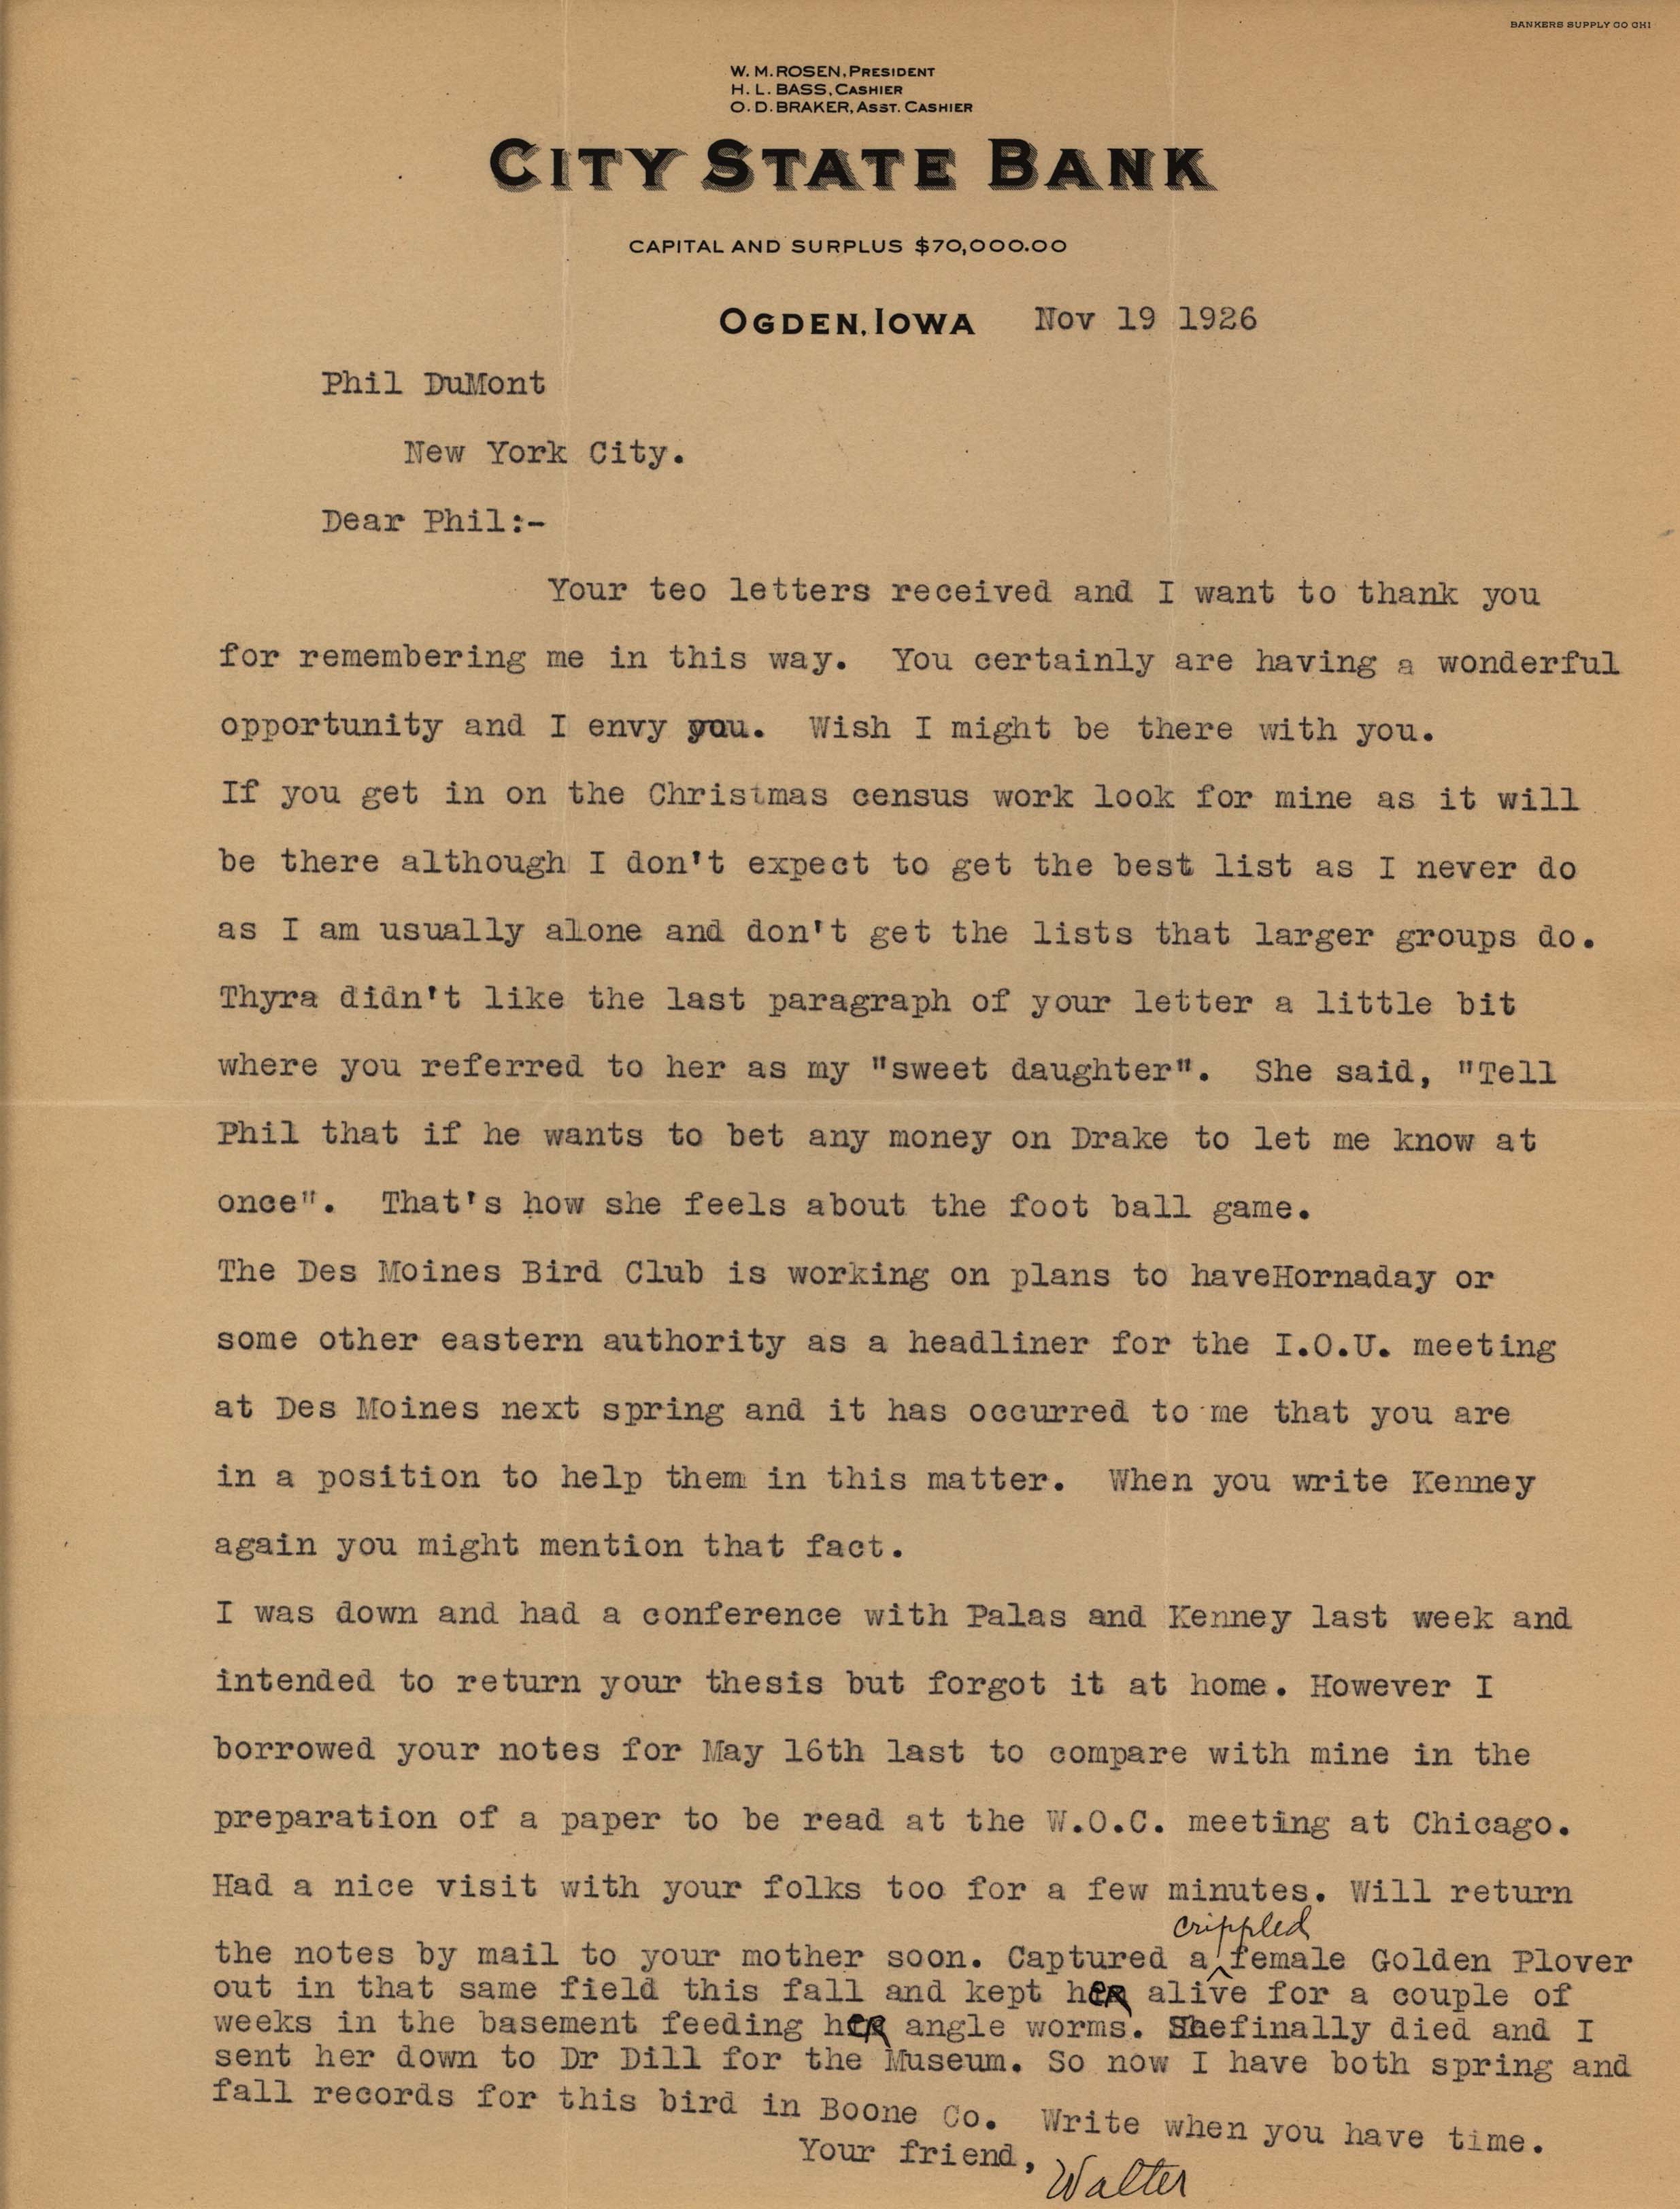 Walter Rosene letter to Philip DuMont regarding upcoming meetings, November 19, 1926